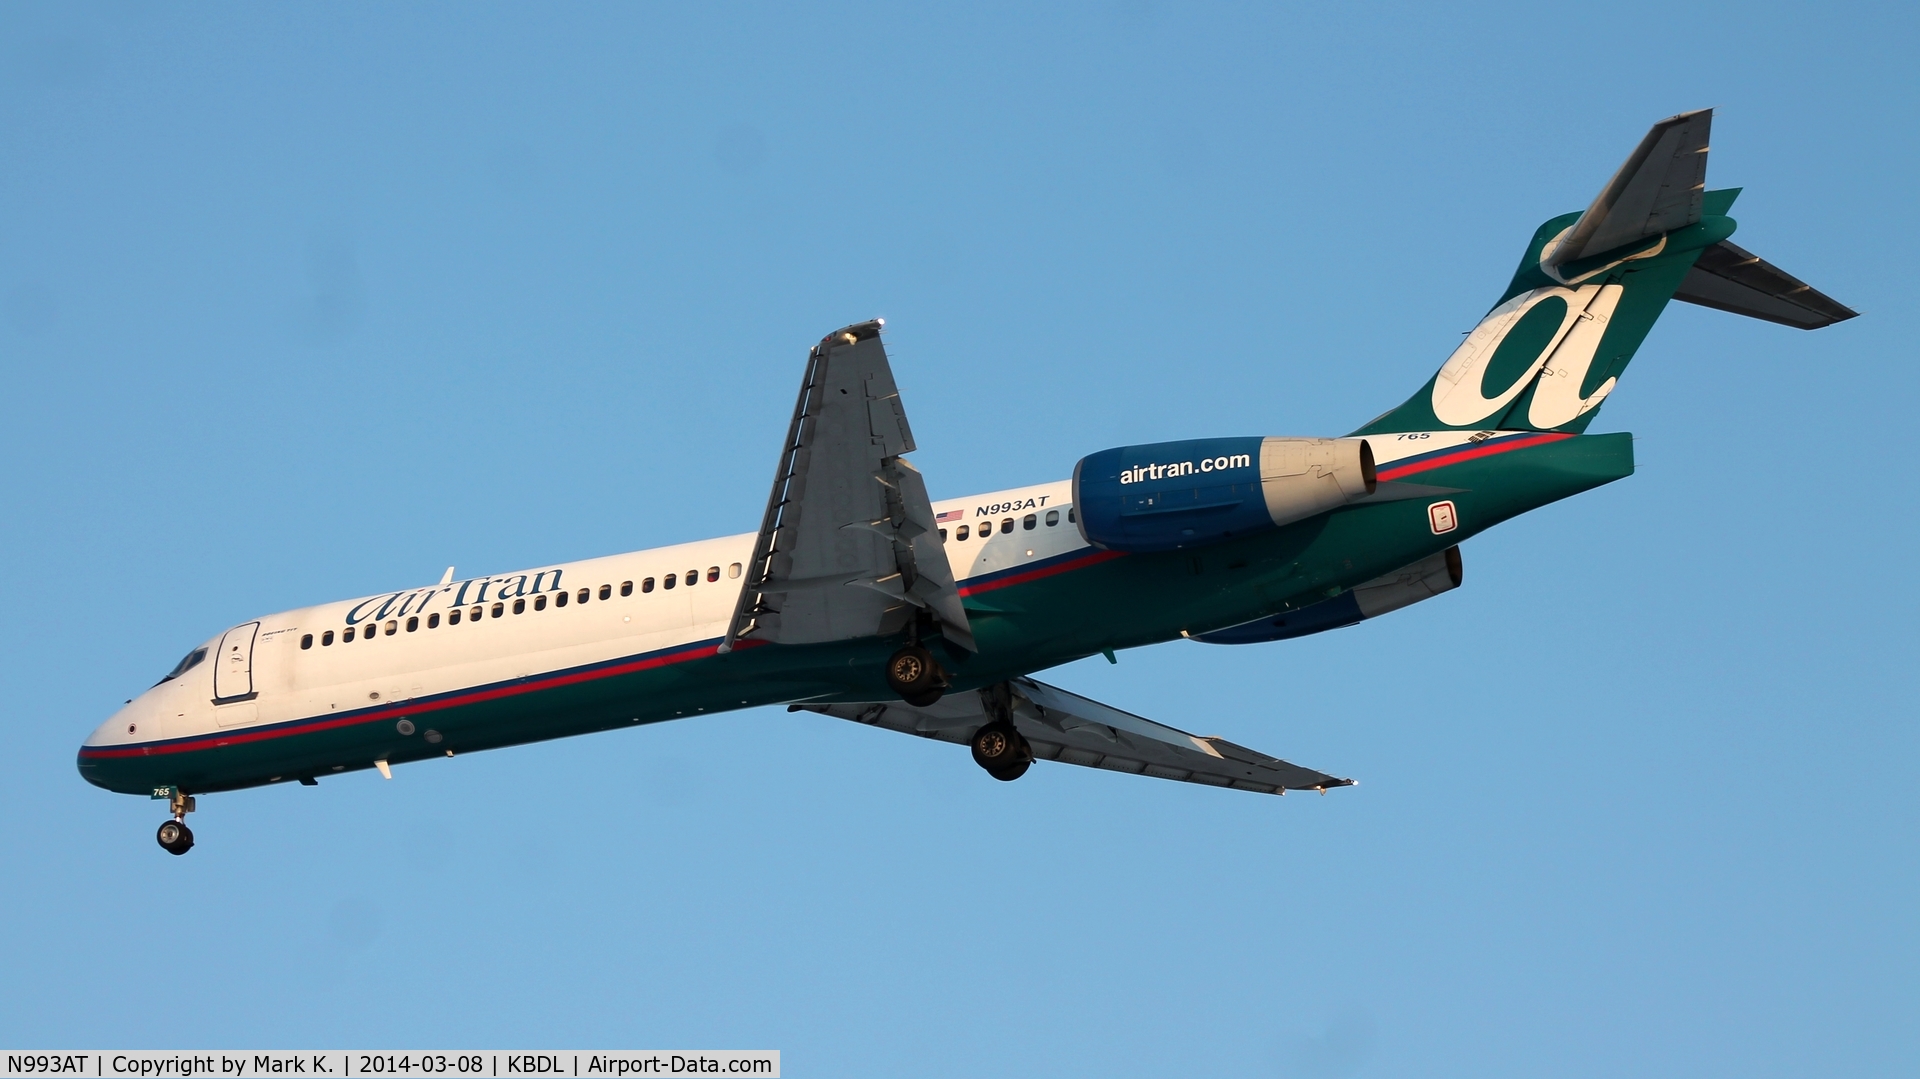 N993AT, 2002 Boeing 717-200 C/N 55137, AirTran Airways flight 128 from Atlanta on short final for runway 6.